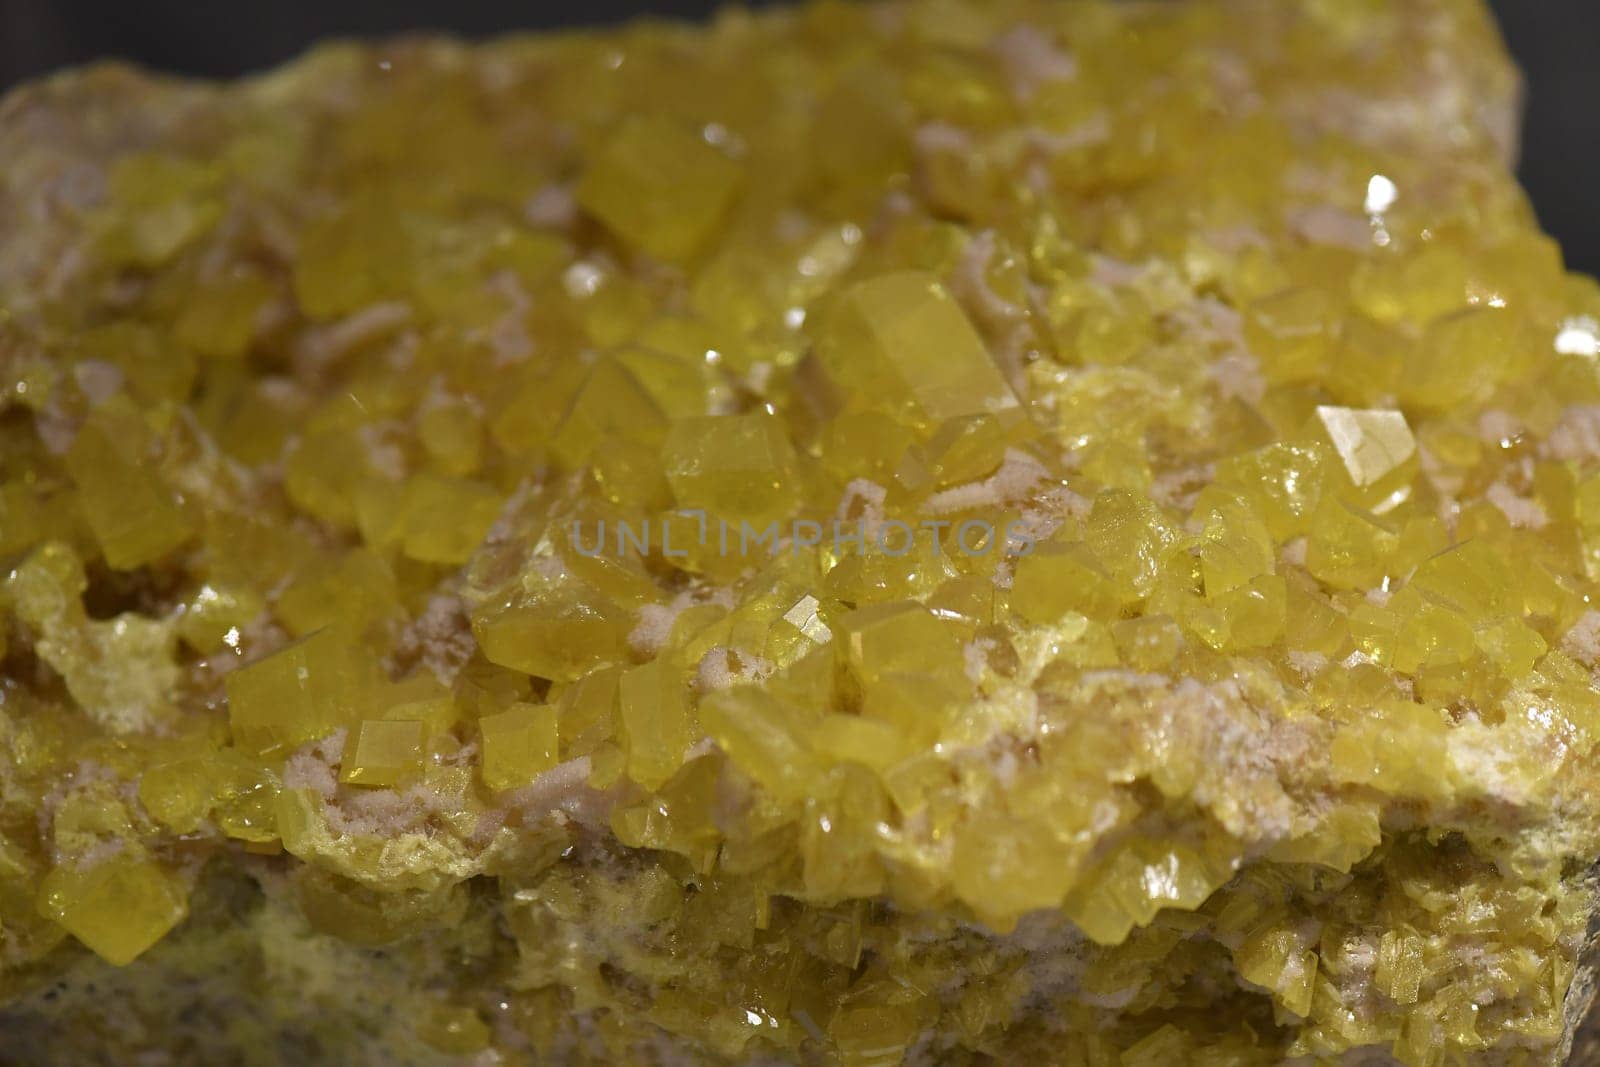 yellow Sulfur on rock macro